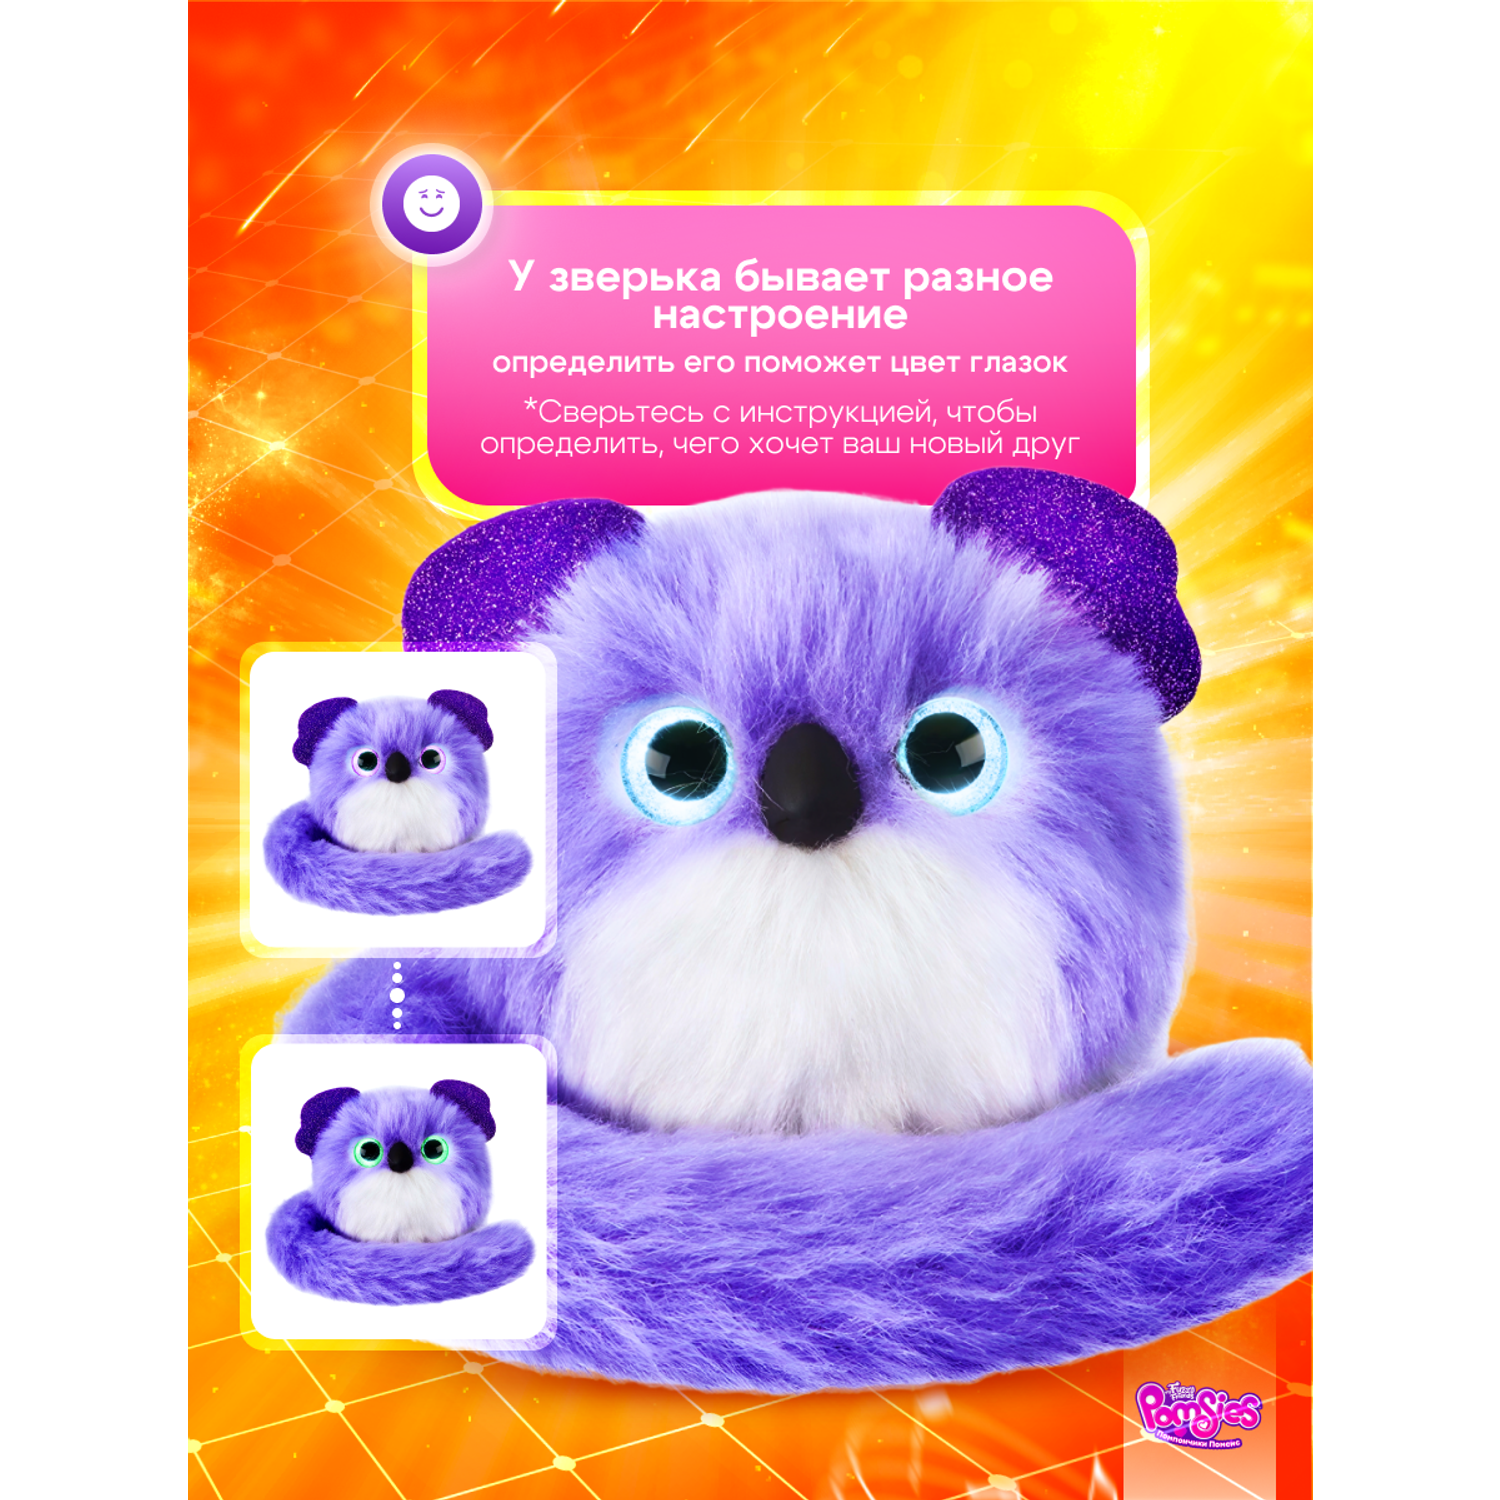 Интерактивная игрушка My Fuzzy Friends Pomsies коала Клои - фото 4